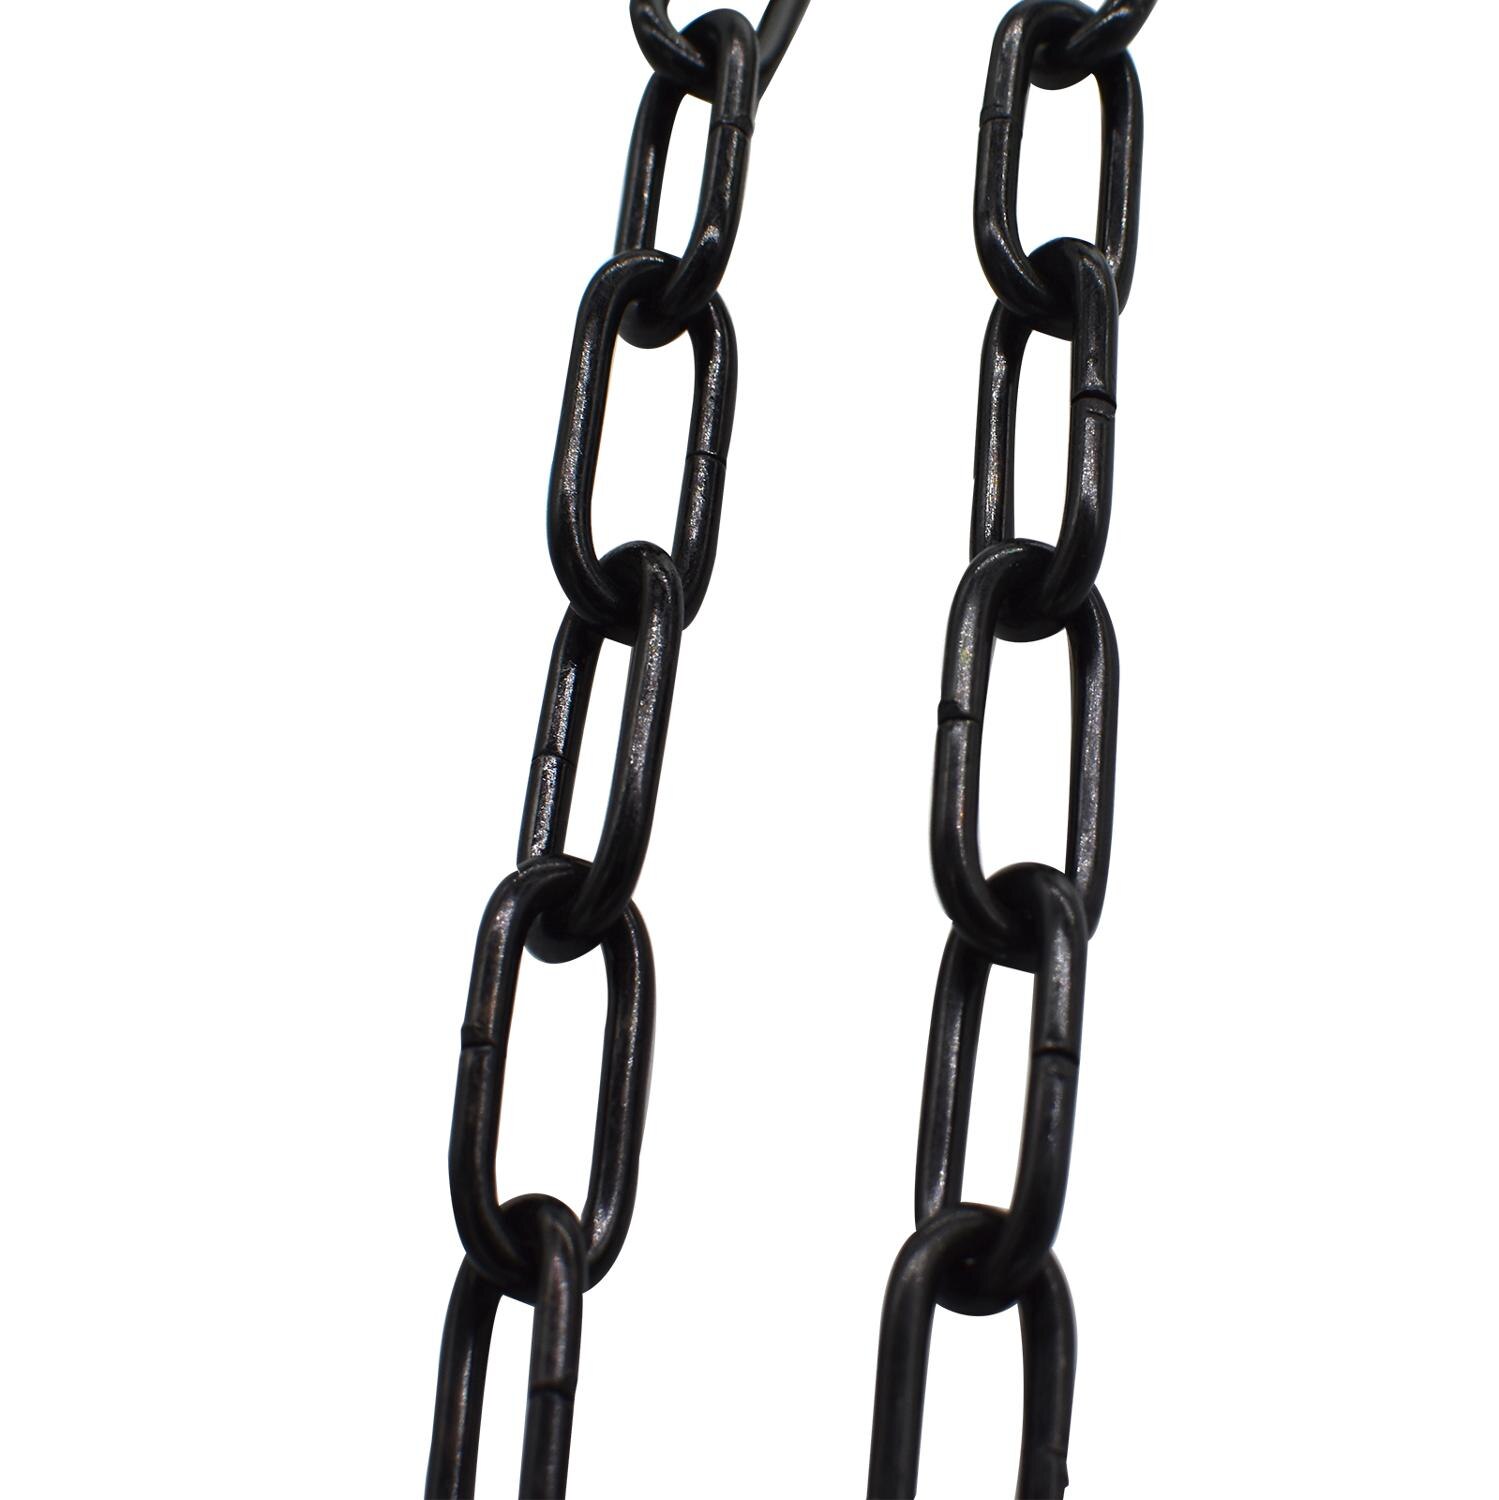 Metalen Ketting Link Ring Kabel Met S Haken Ligth Duty Coil Ketting Voor Vergrendeling Opknoping Trekken Zwart